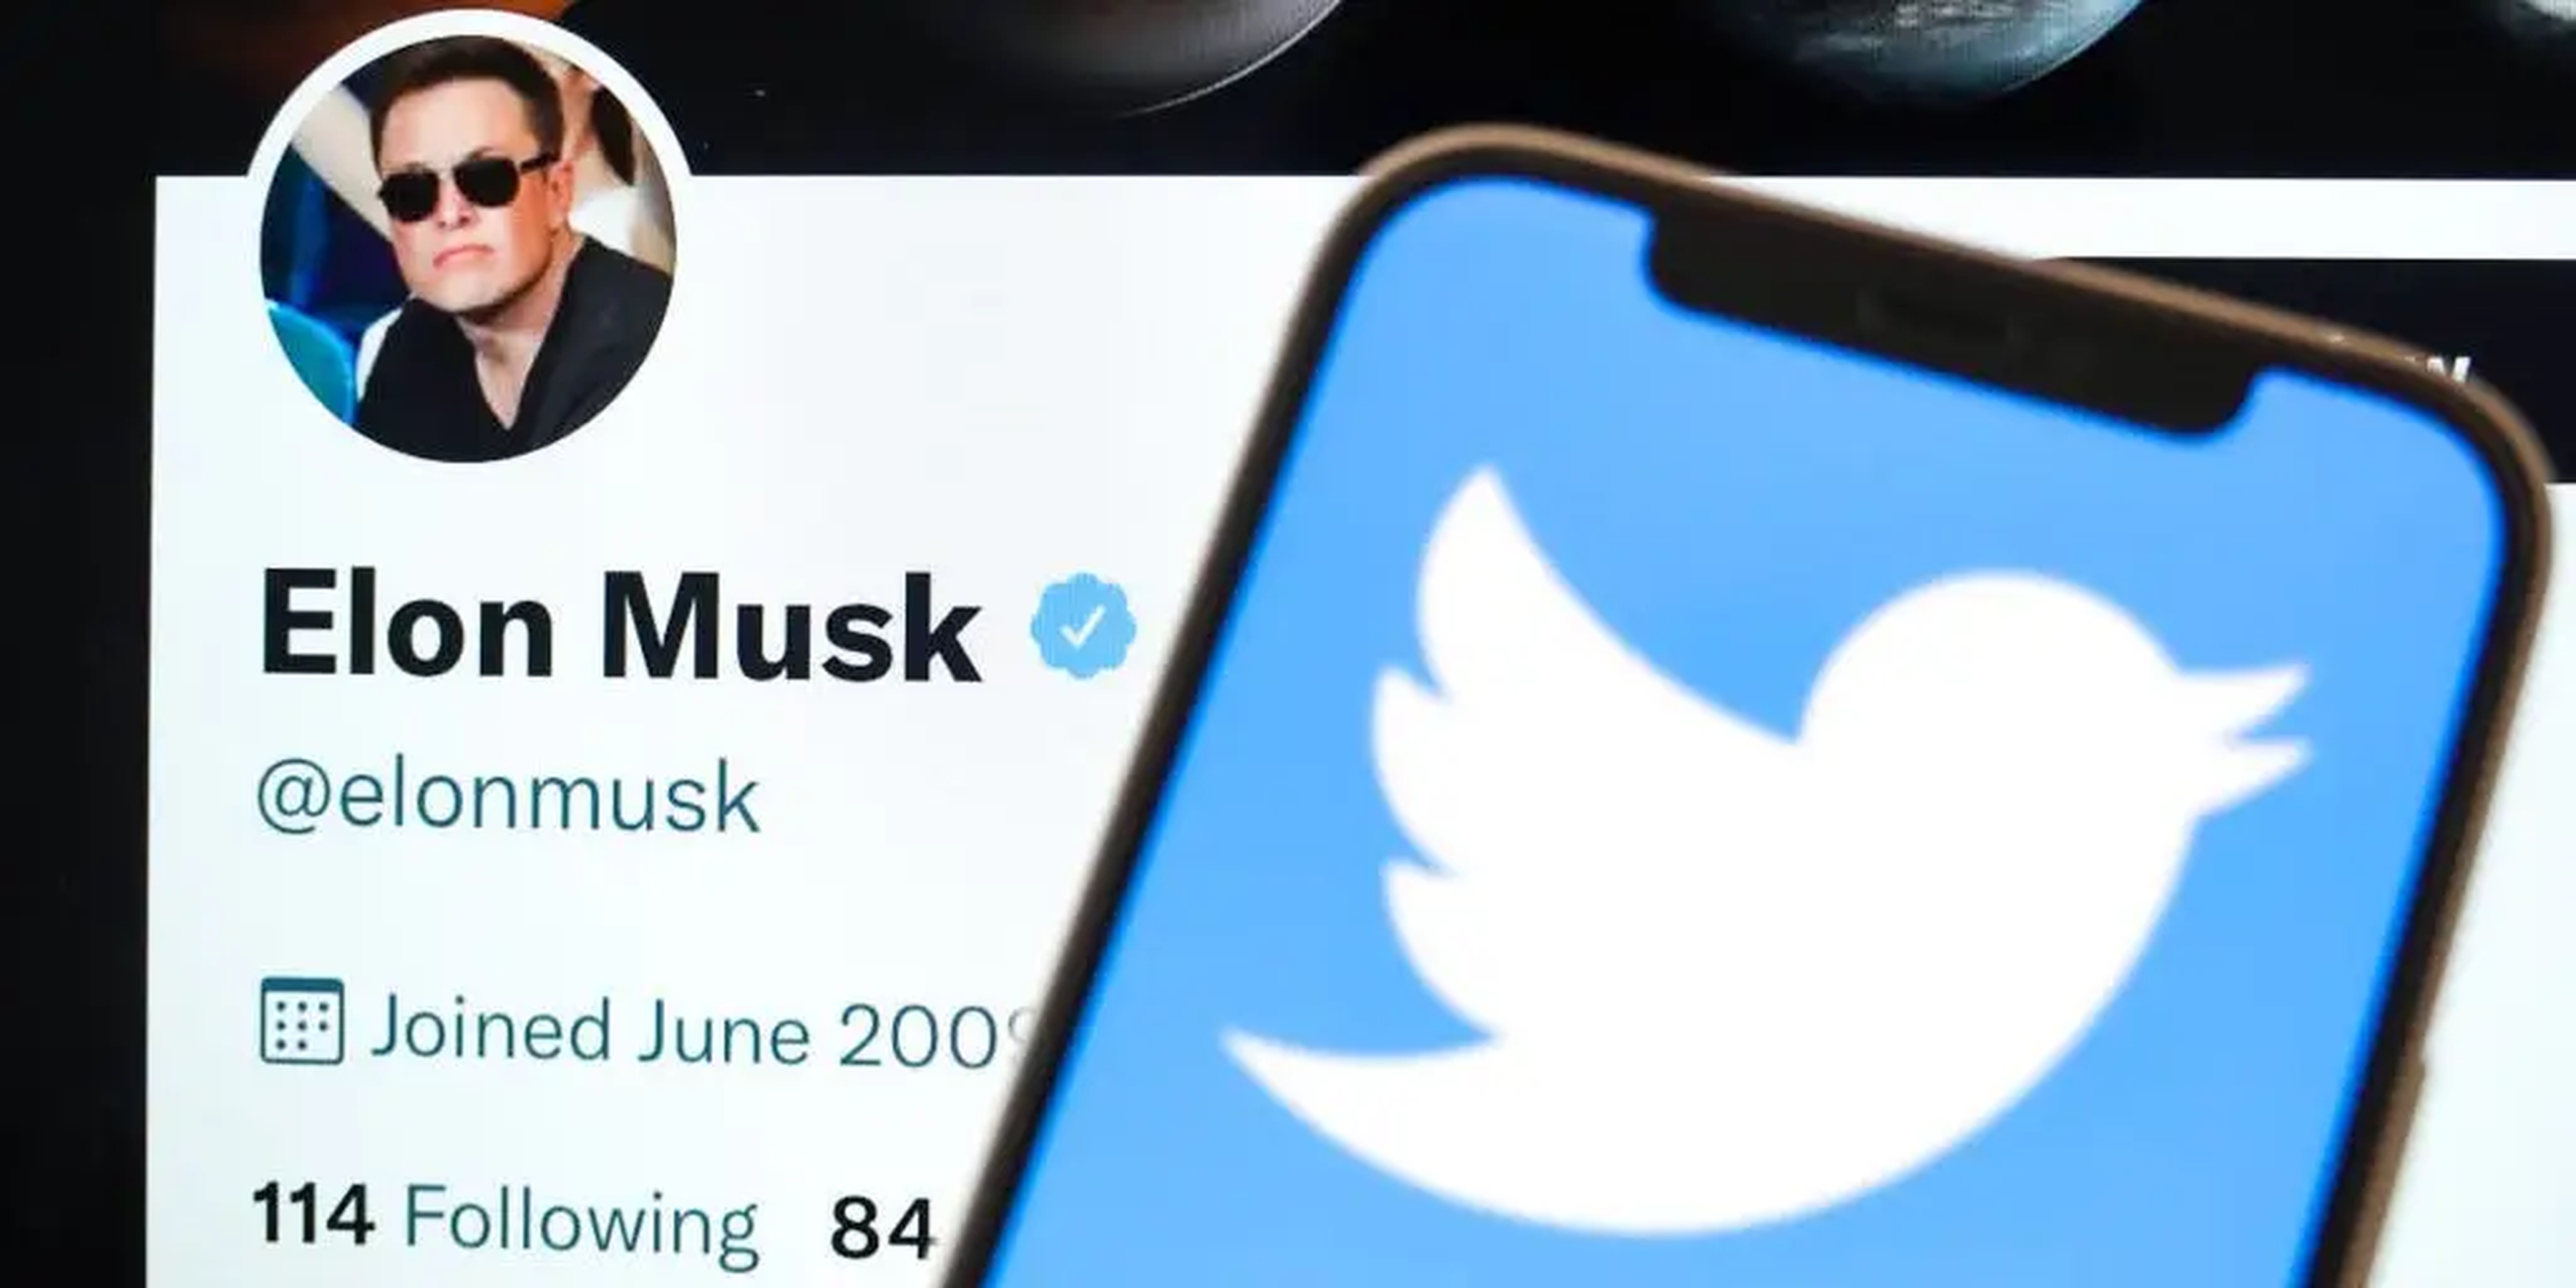 Musk está asumiendo una gran cantidad de deuda para comprar Twitter, lo que podría suponer para la empresa -y para él- unos costes de intereses enormes.